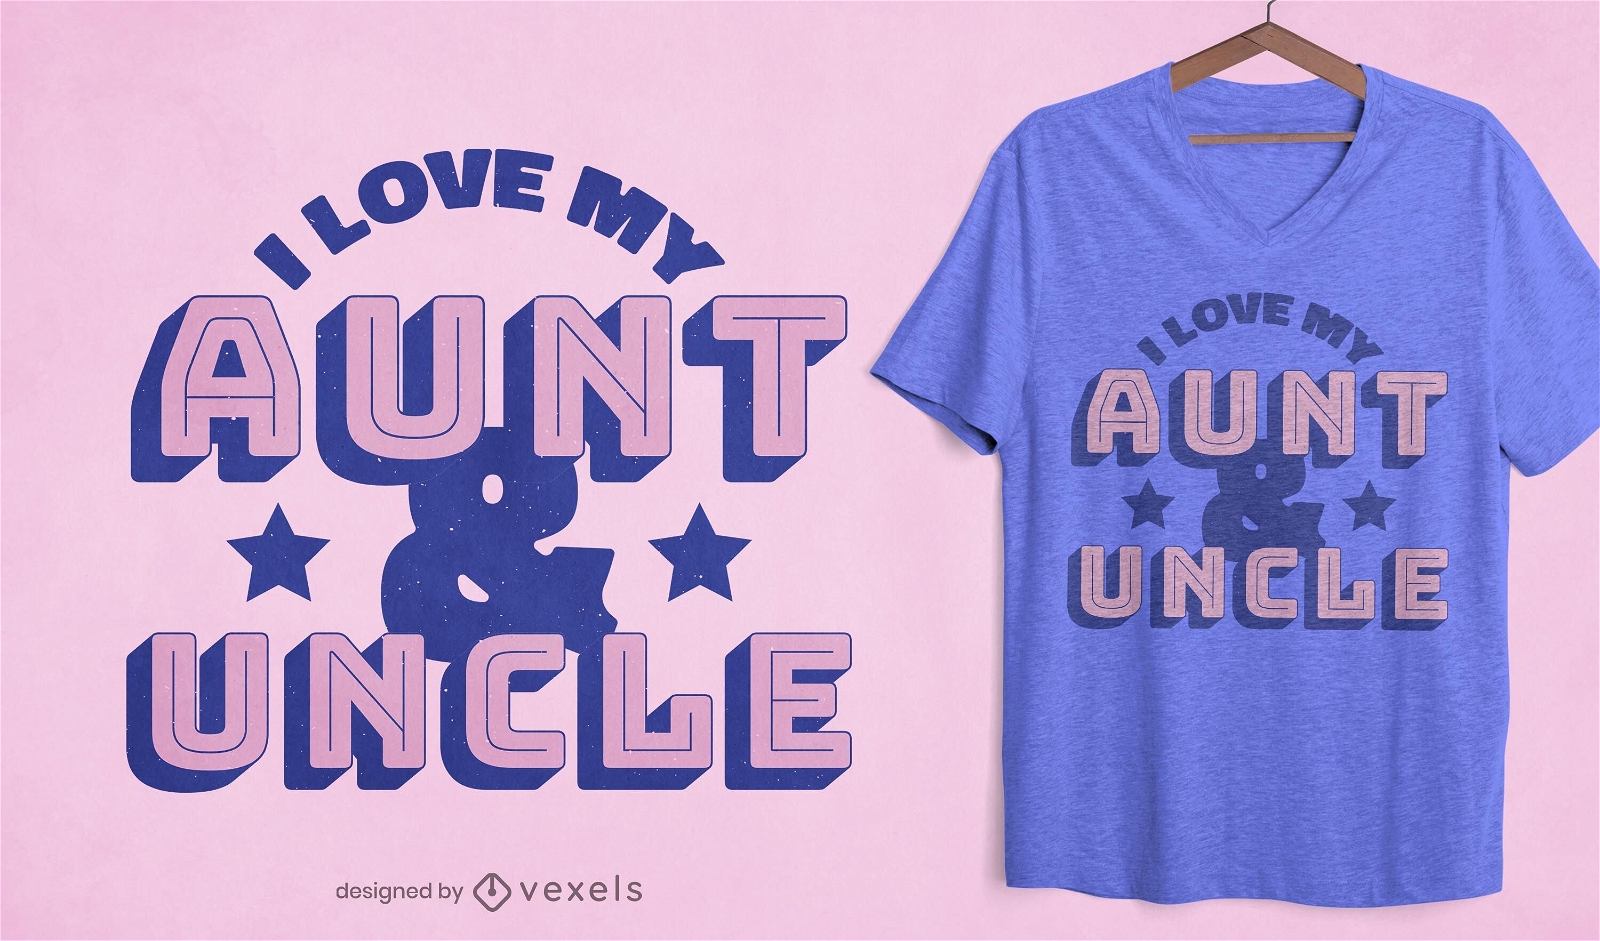 Love my aunt & uncle t-shirt design